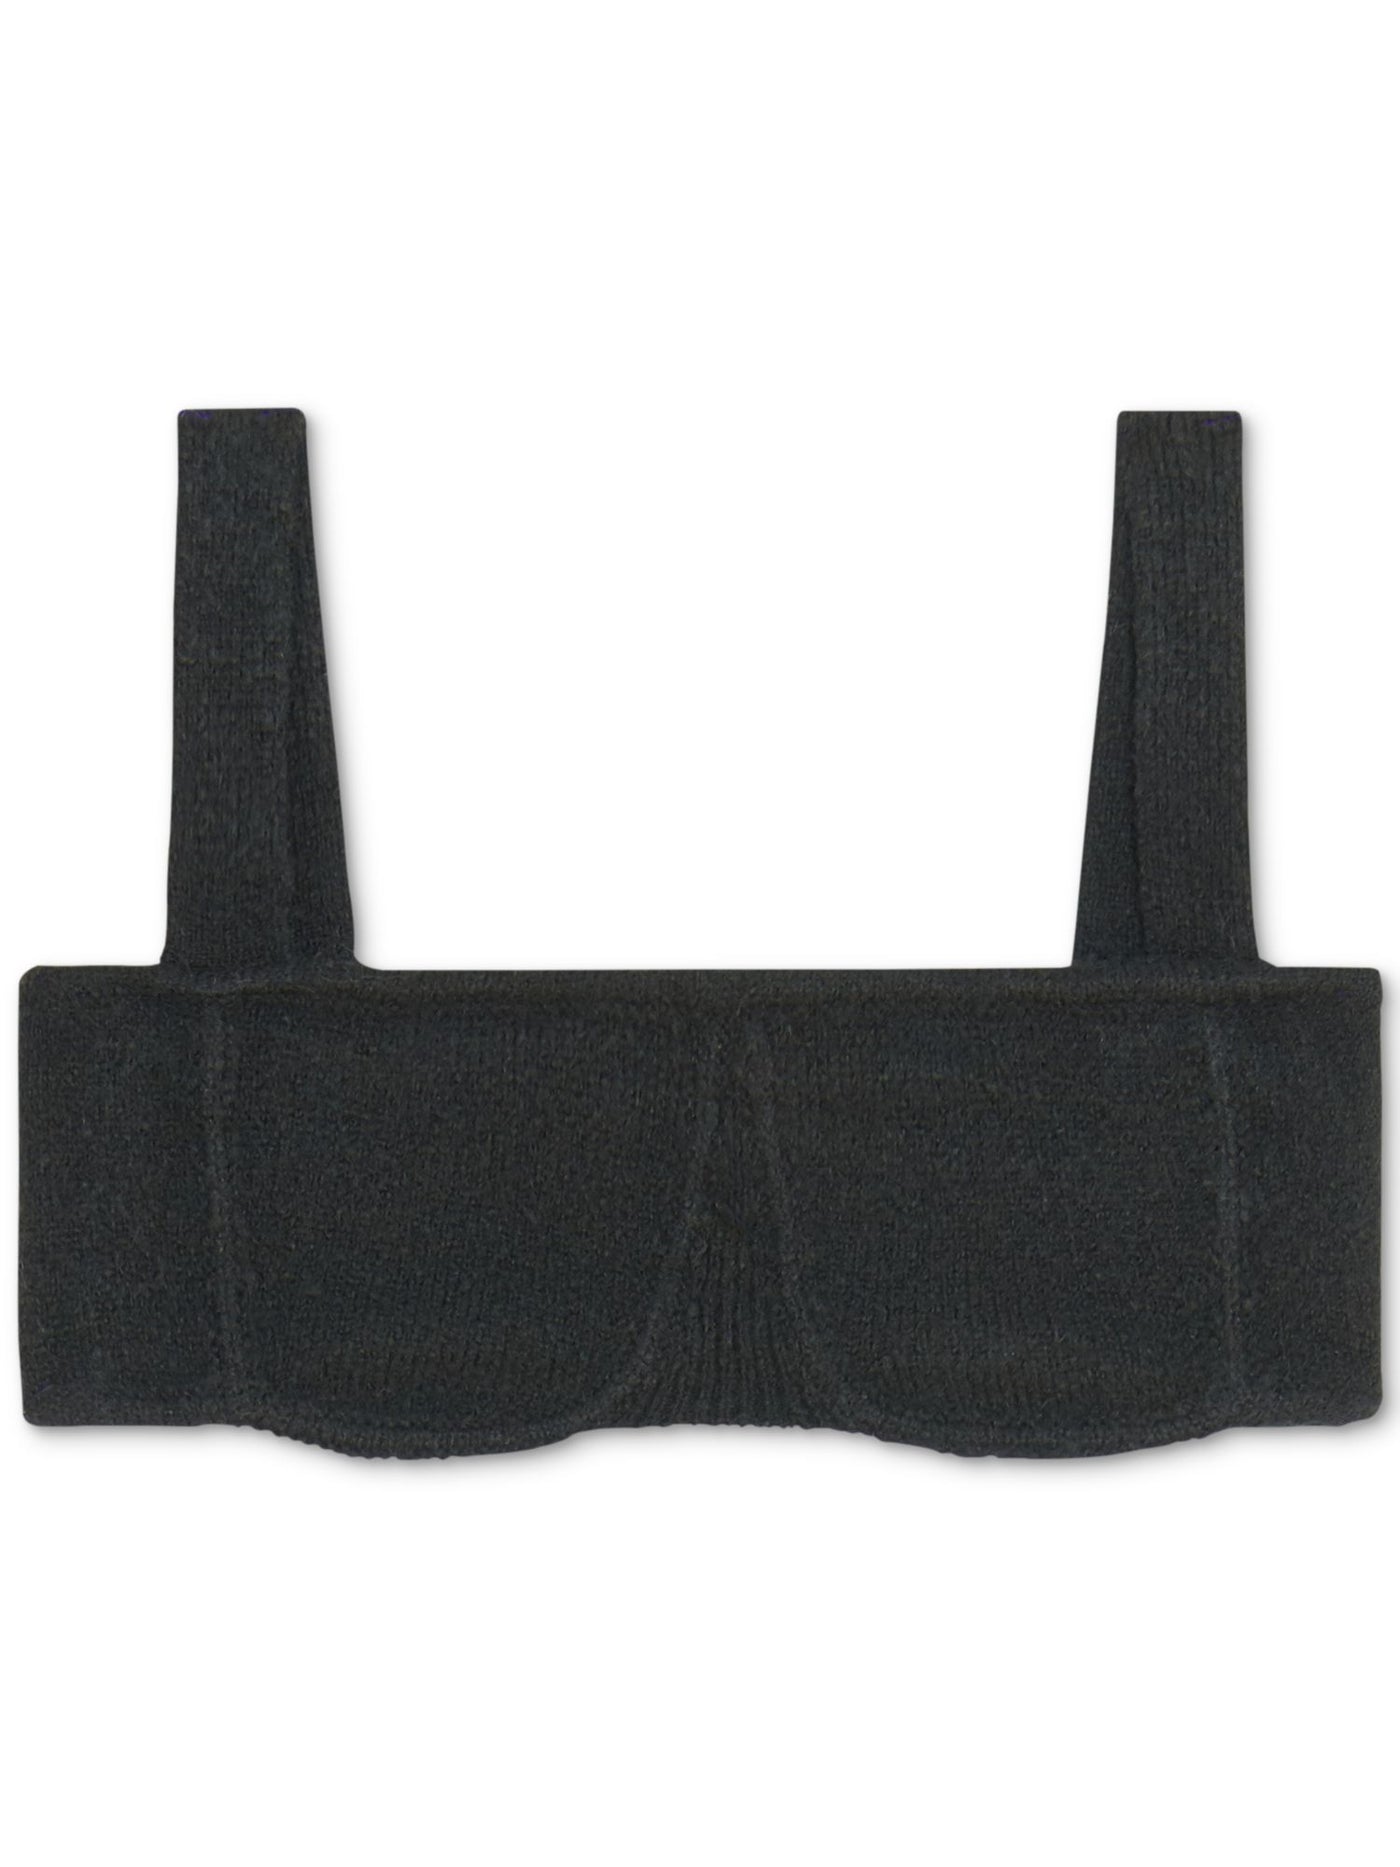 DANIELLE BERNSTEIN Intimates Black Straight Neck Sweater Bralette Bra XL